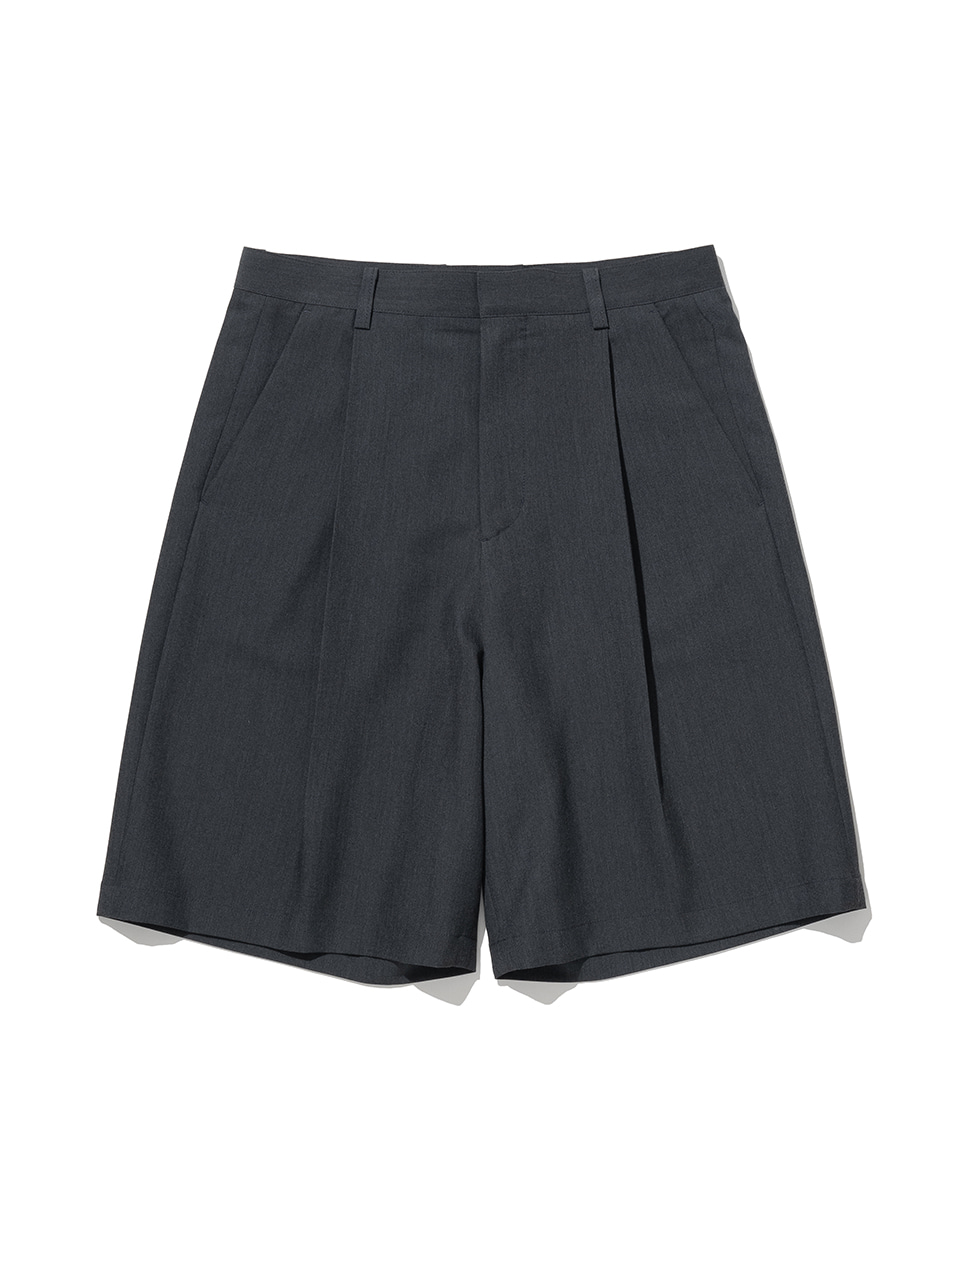 Minimalist Bermuda Half Pants - Charcoal